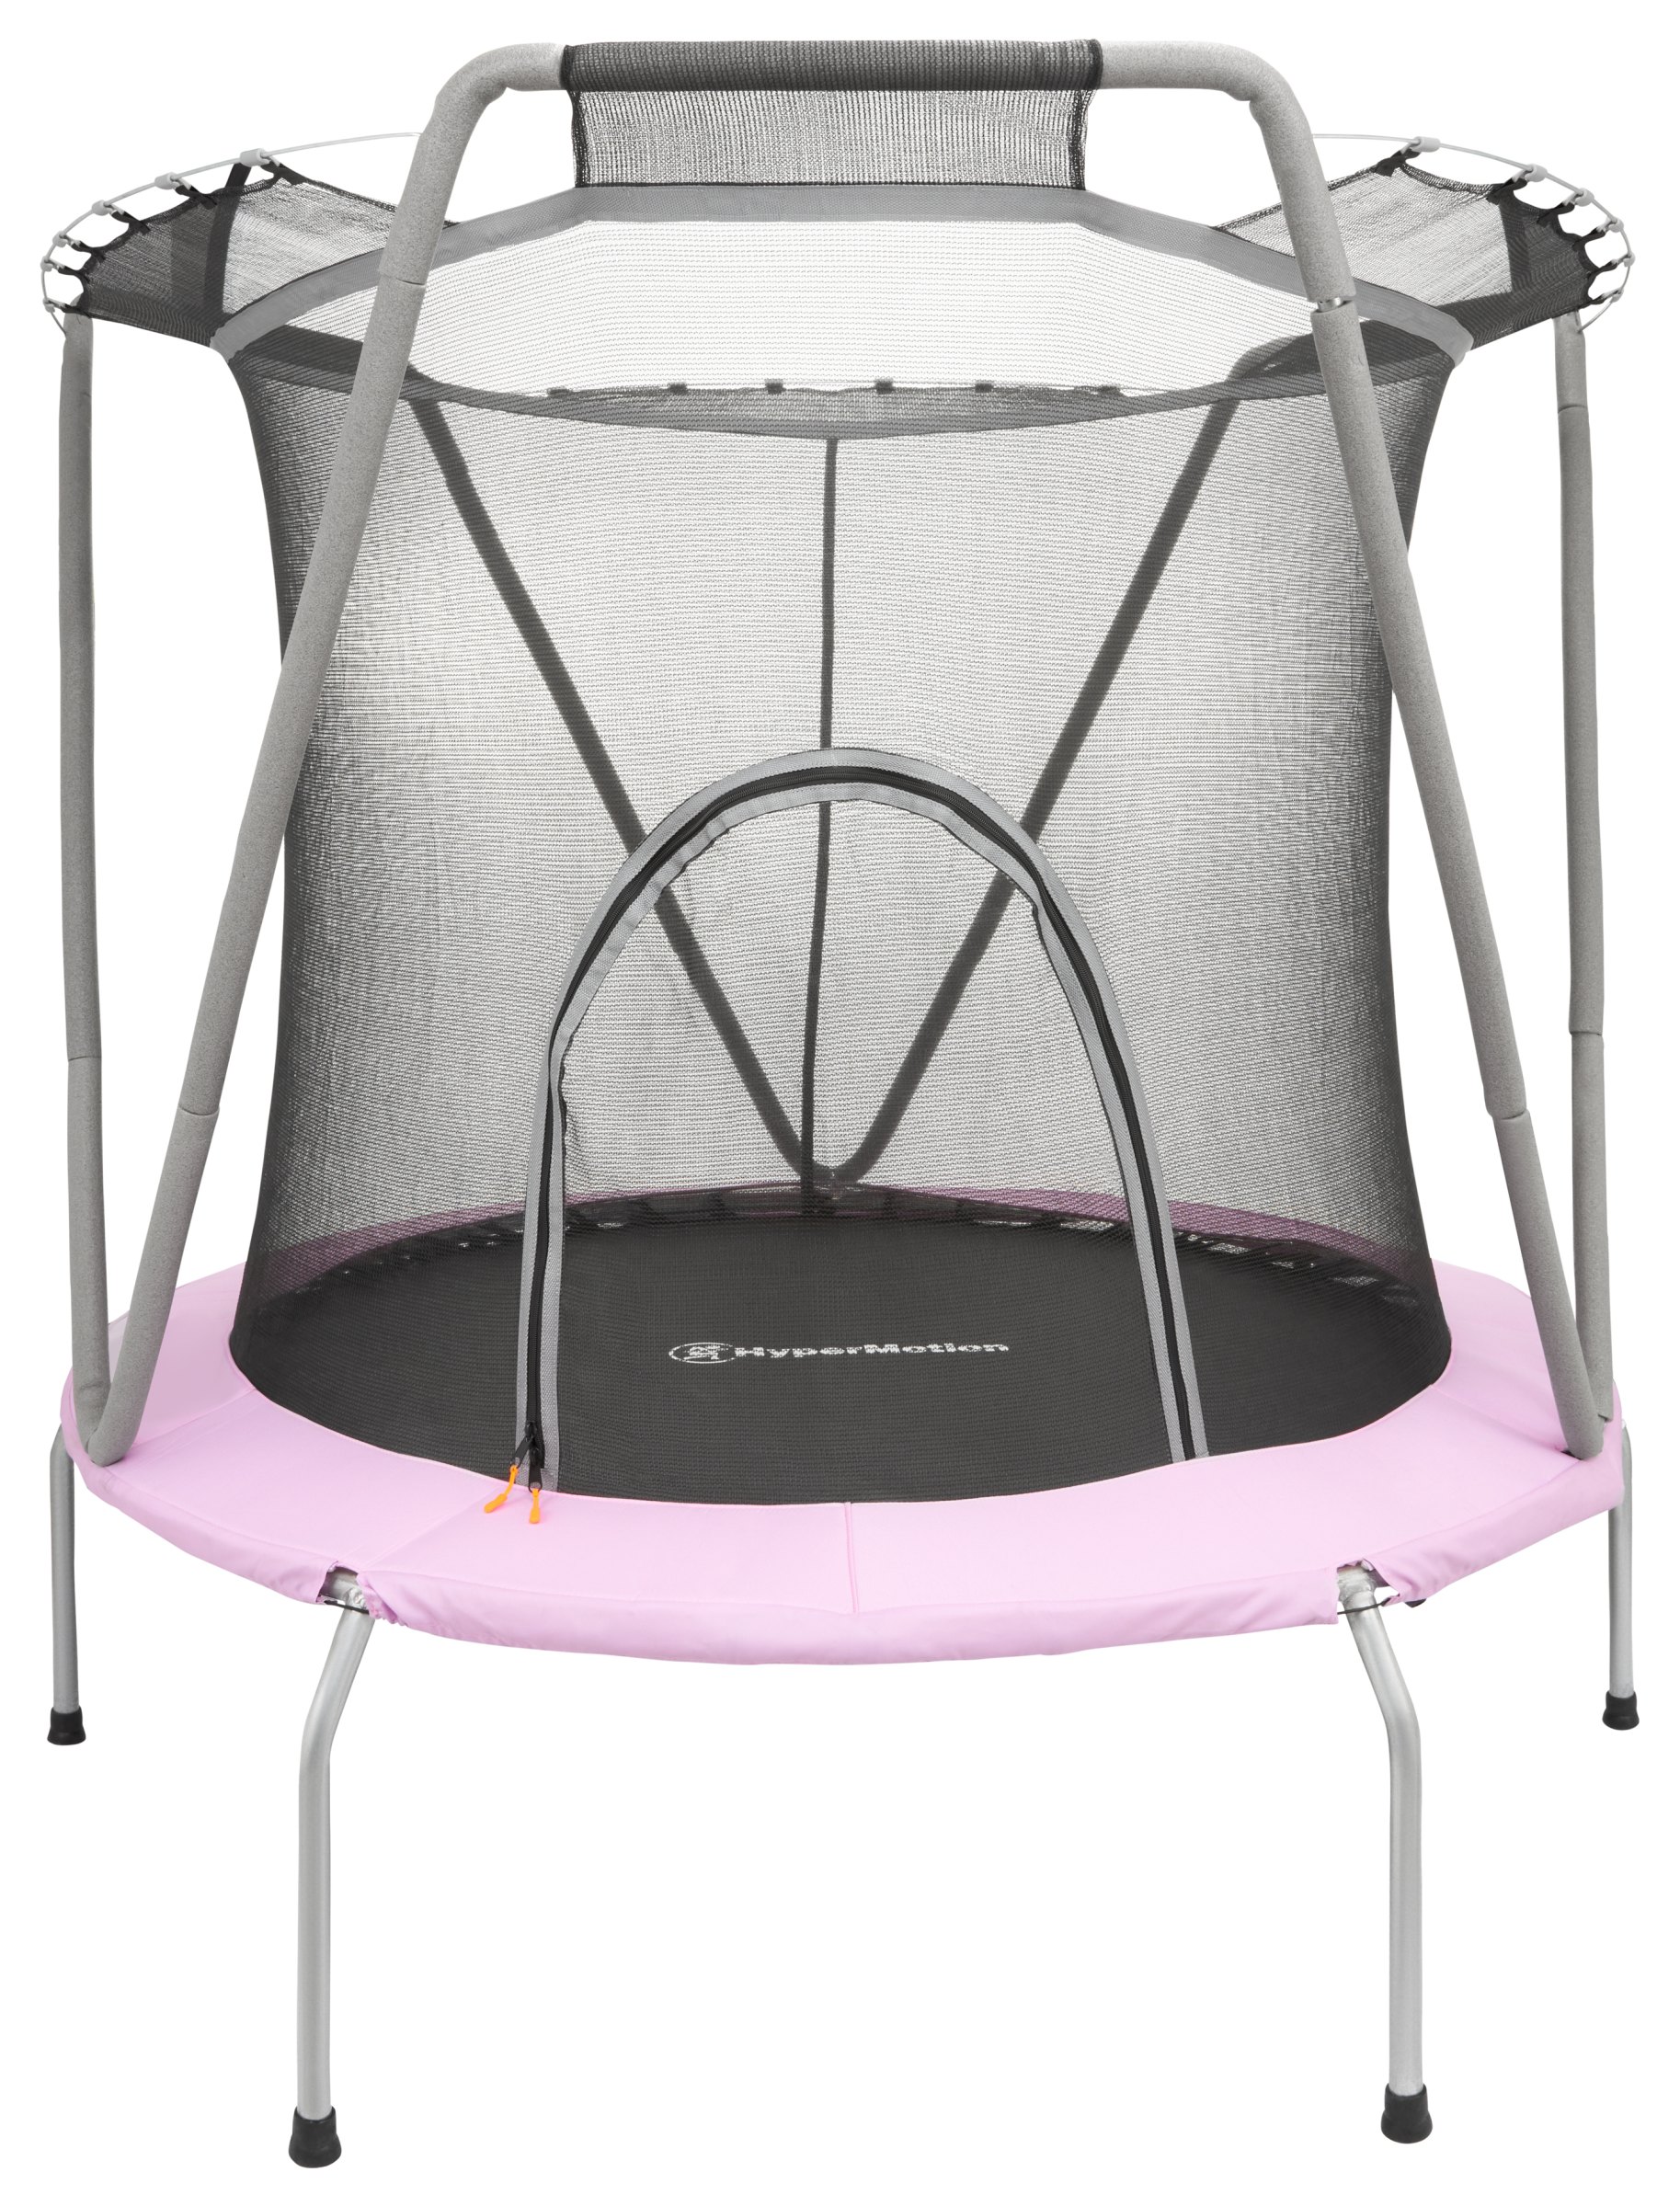 167cm trampolin med sikkerhedsnet - til børn 3-8 år - hus og have | SPORT REKREATION \ Springbrætter | Mamabrum.dk